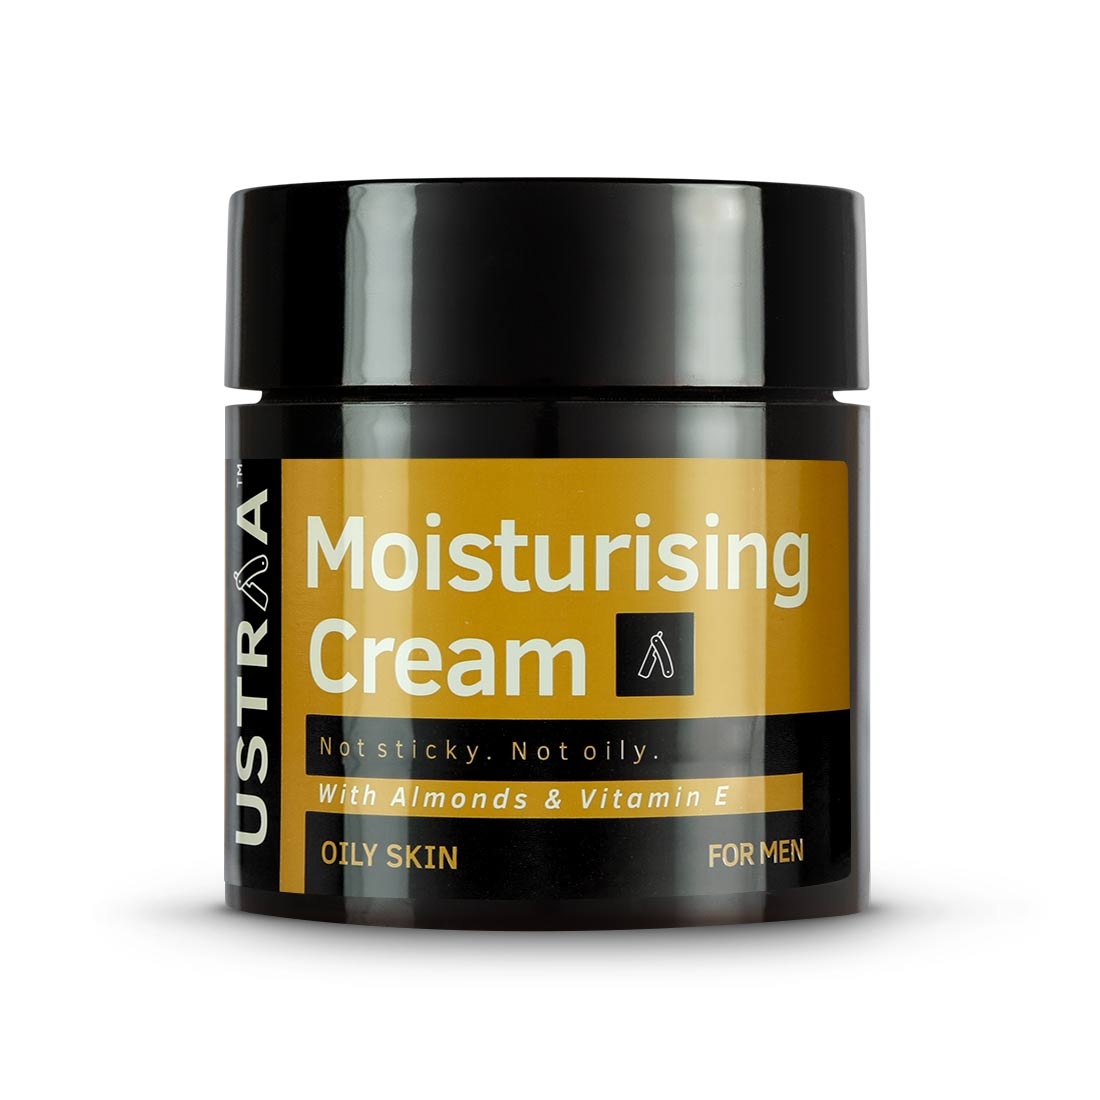 Moisturising Cream for Oily Skin - 100g